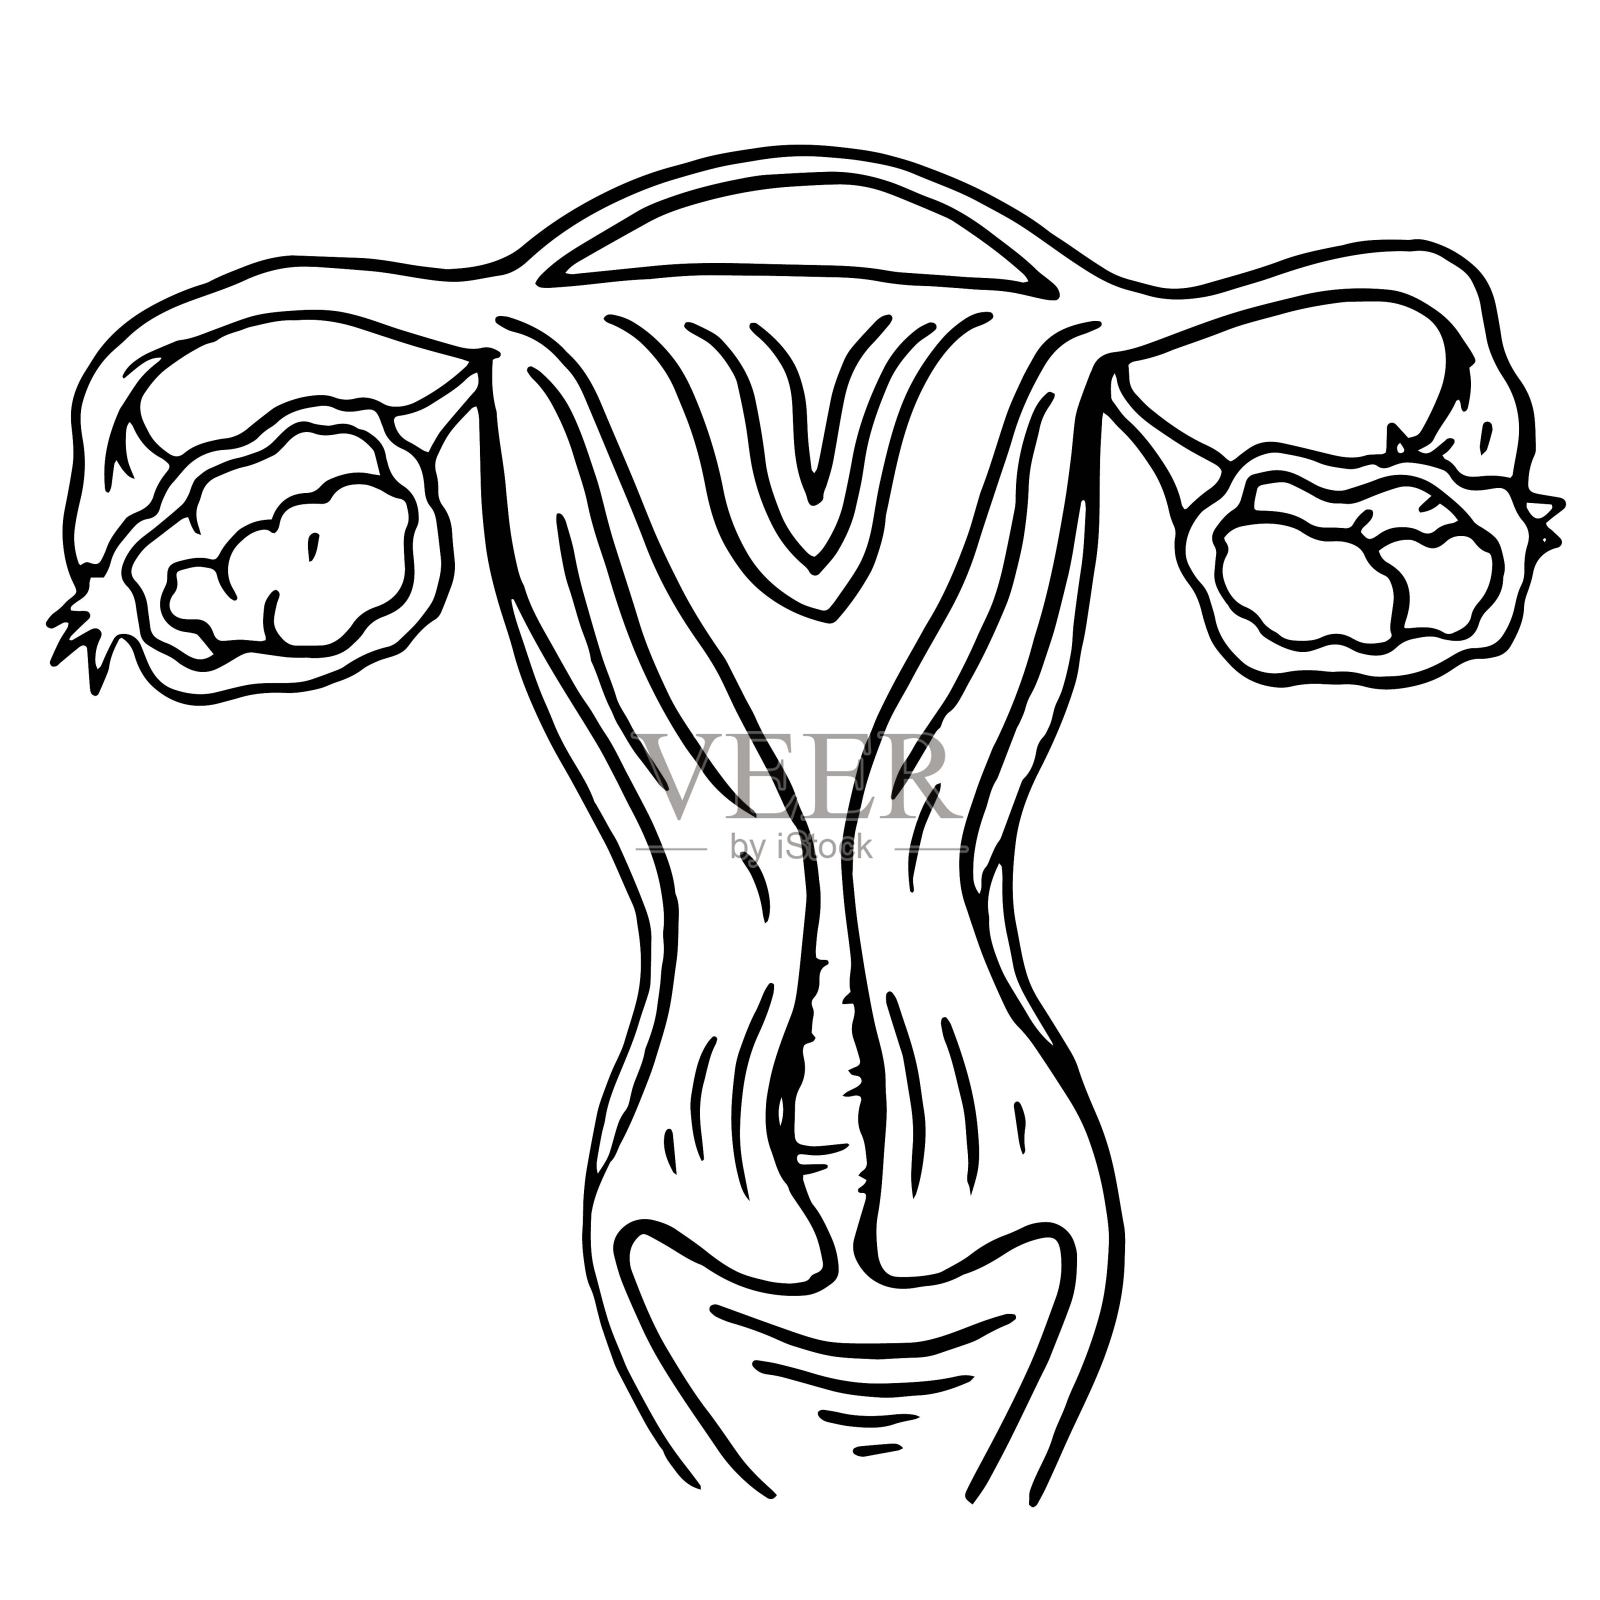 女人生殖器11种图片,女人私处究竟长什么样子呢？(3) - 两性知识 - 蓝灵育儿网